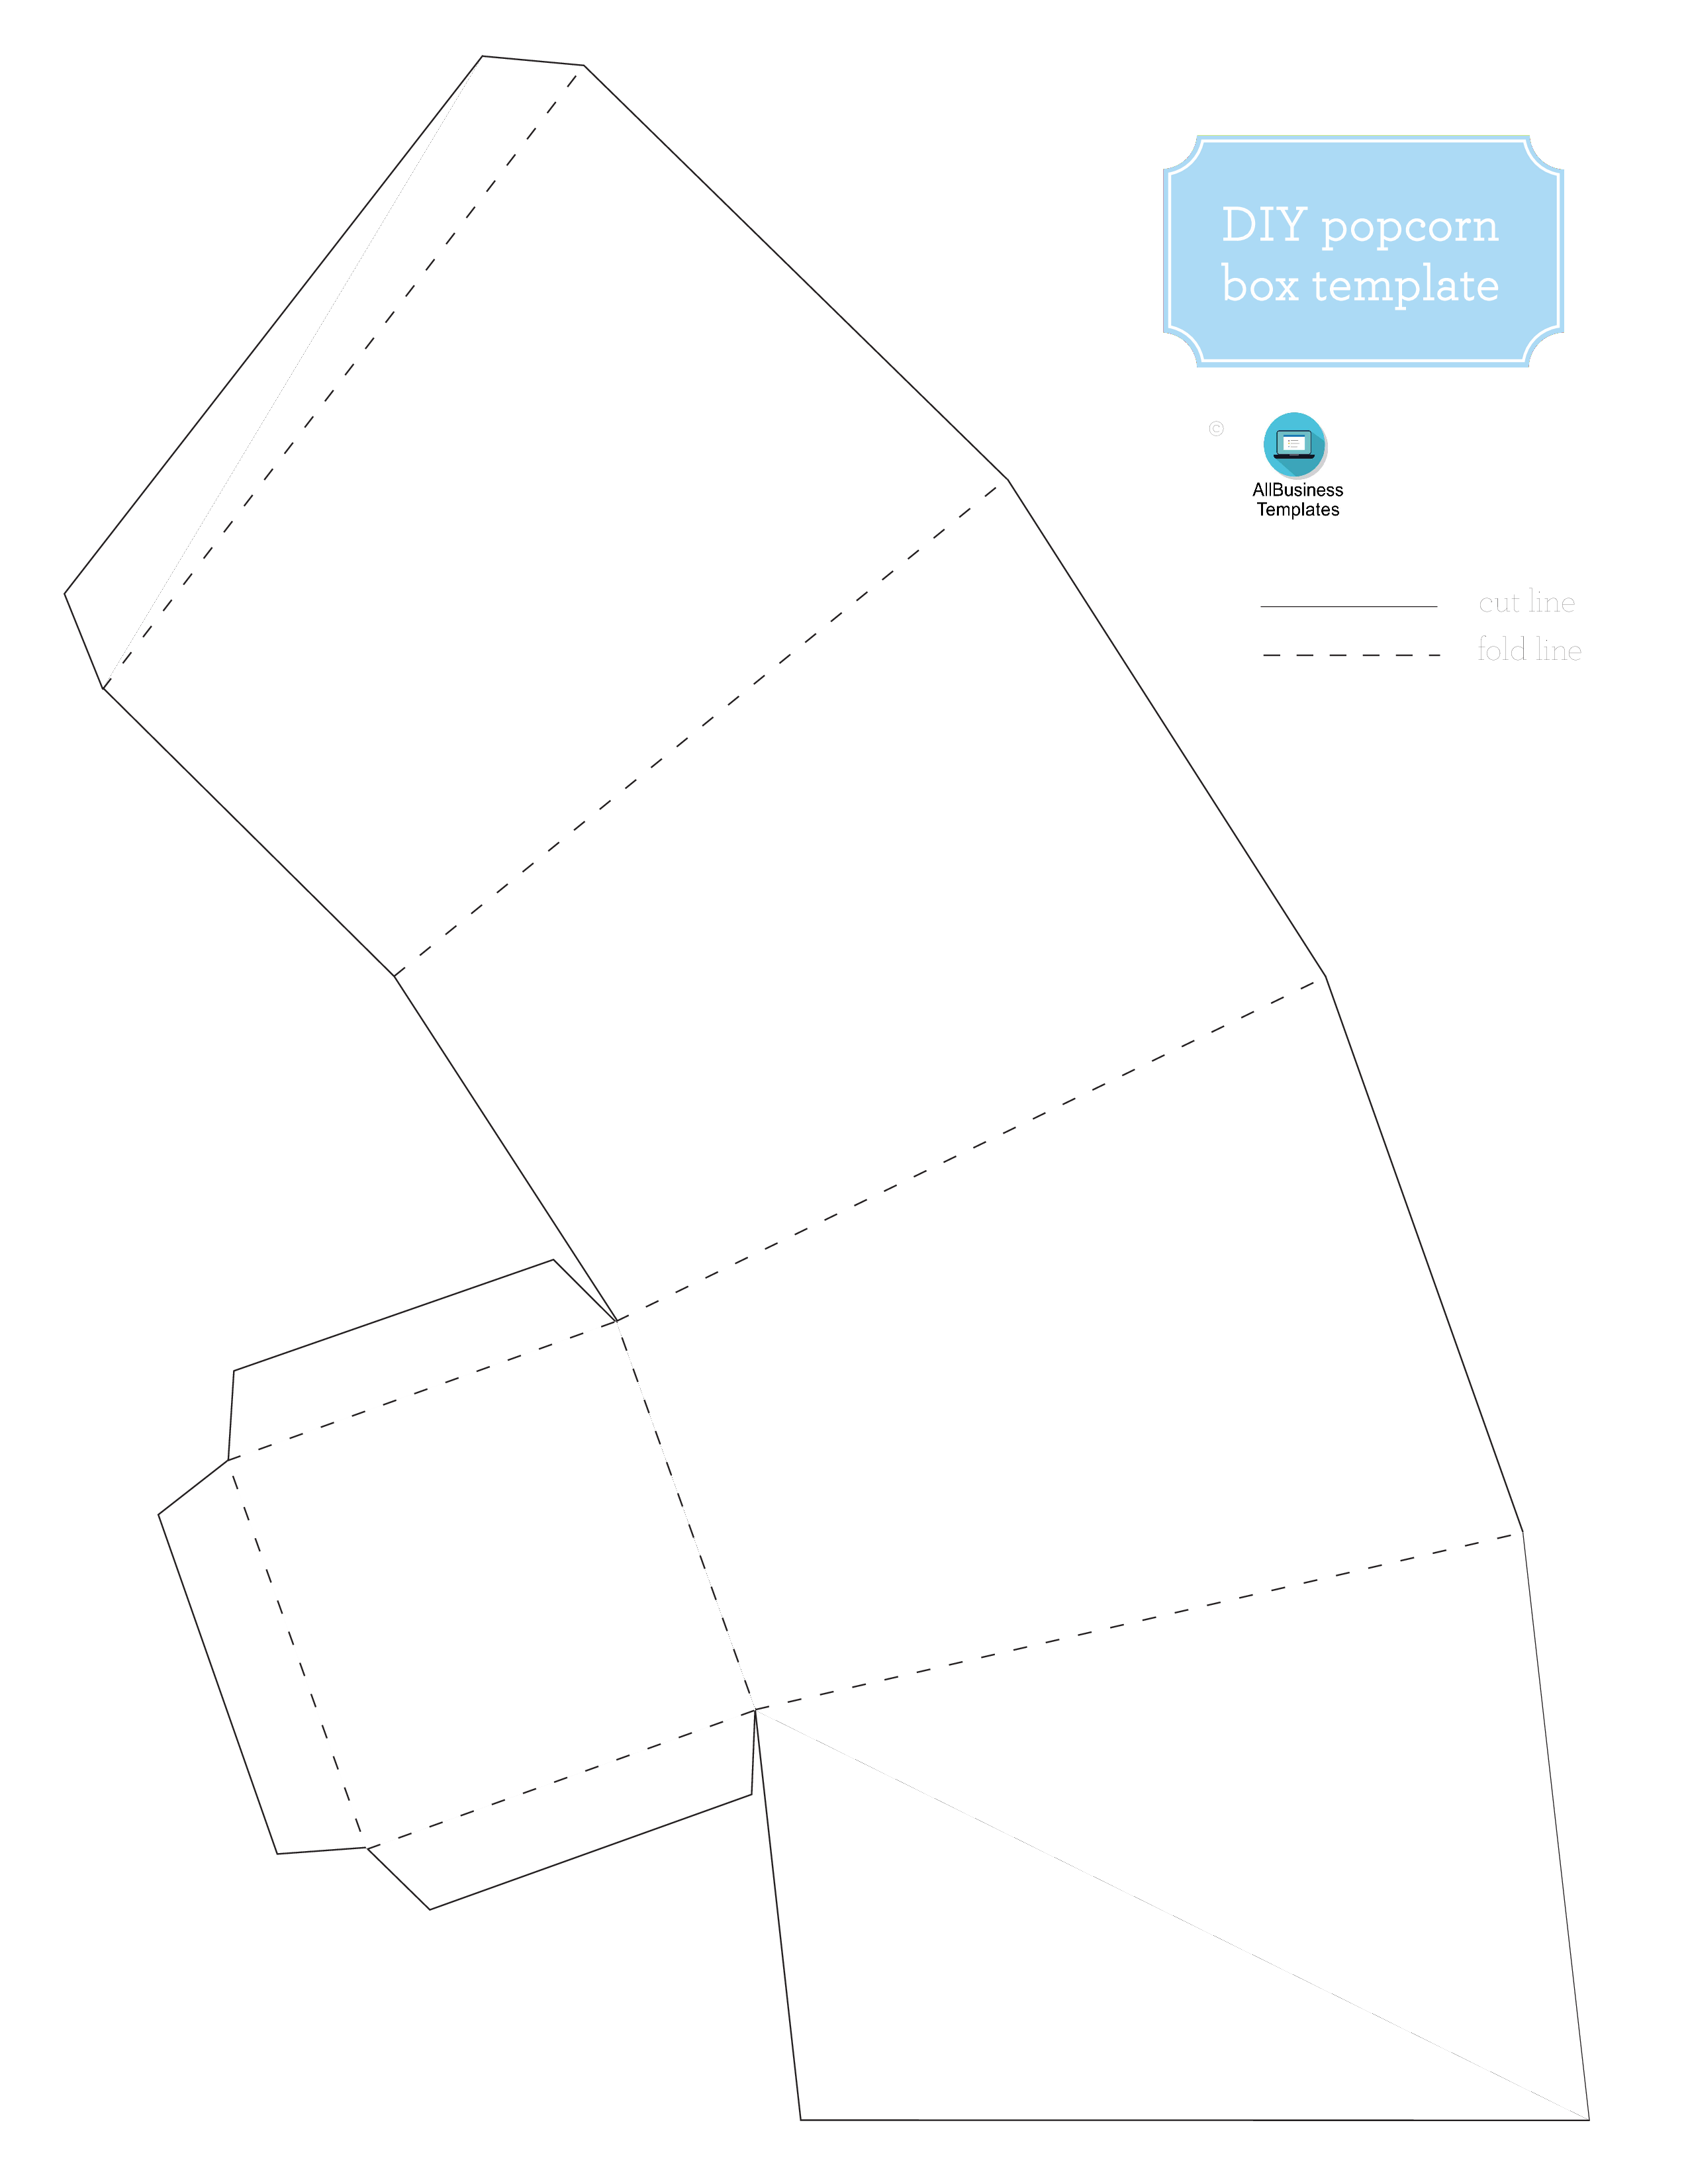 爆米花盒模板 pdf Hauptschablonenbild